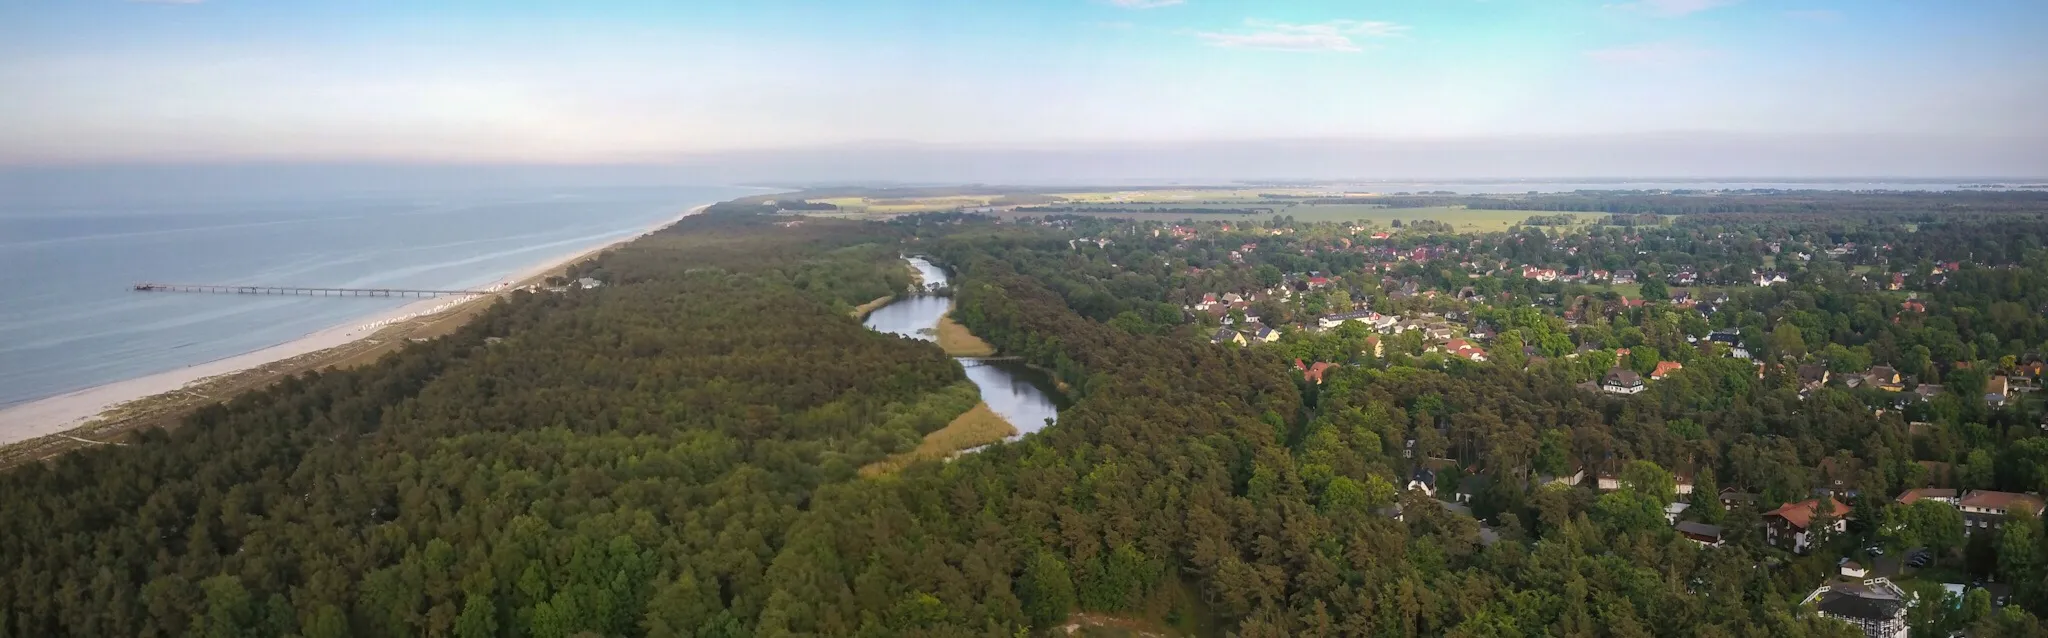 Photo showing: Prerow ist ein Seebad auf der Halbinsel Darß in Mecklenburg-Vorpommern. Links ragt die Seebrücke in die Ostsee, in der Mitte ist ein Ausläufer des Prerower Stroms zu sehen, der die Ortschaft vom Meer trennt. Rechts im Hintergrund das Boddenmeer.